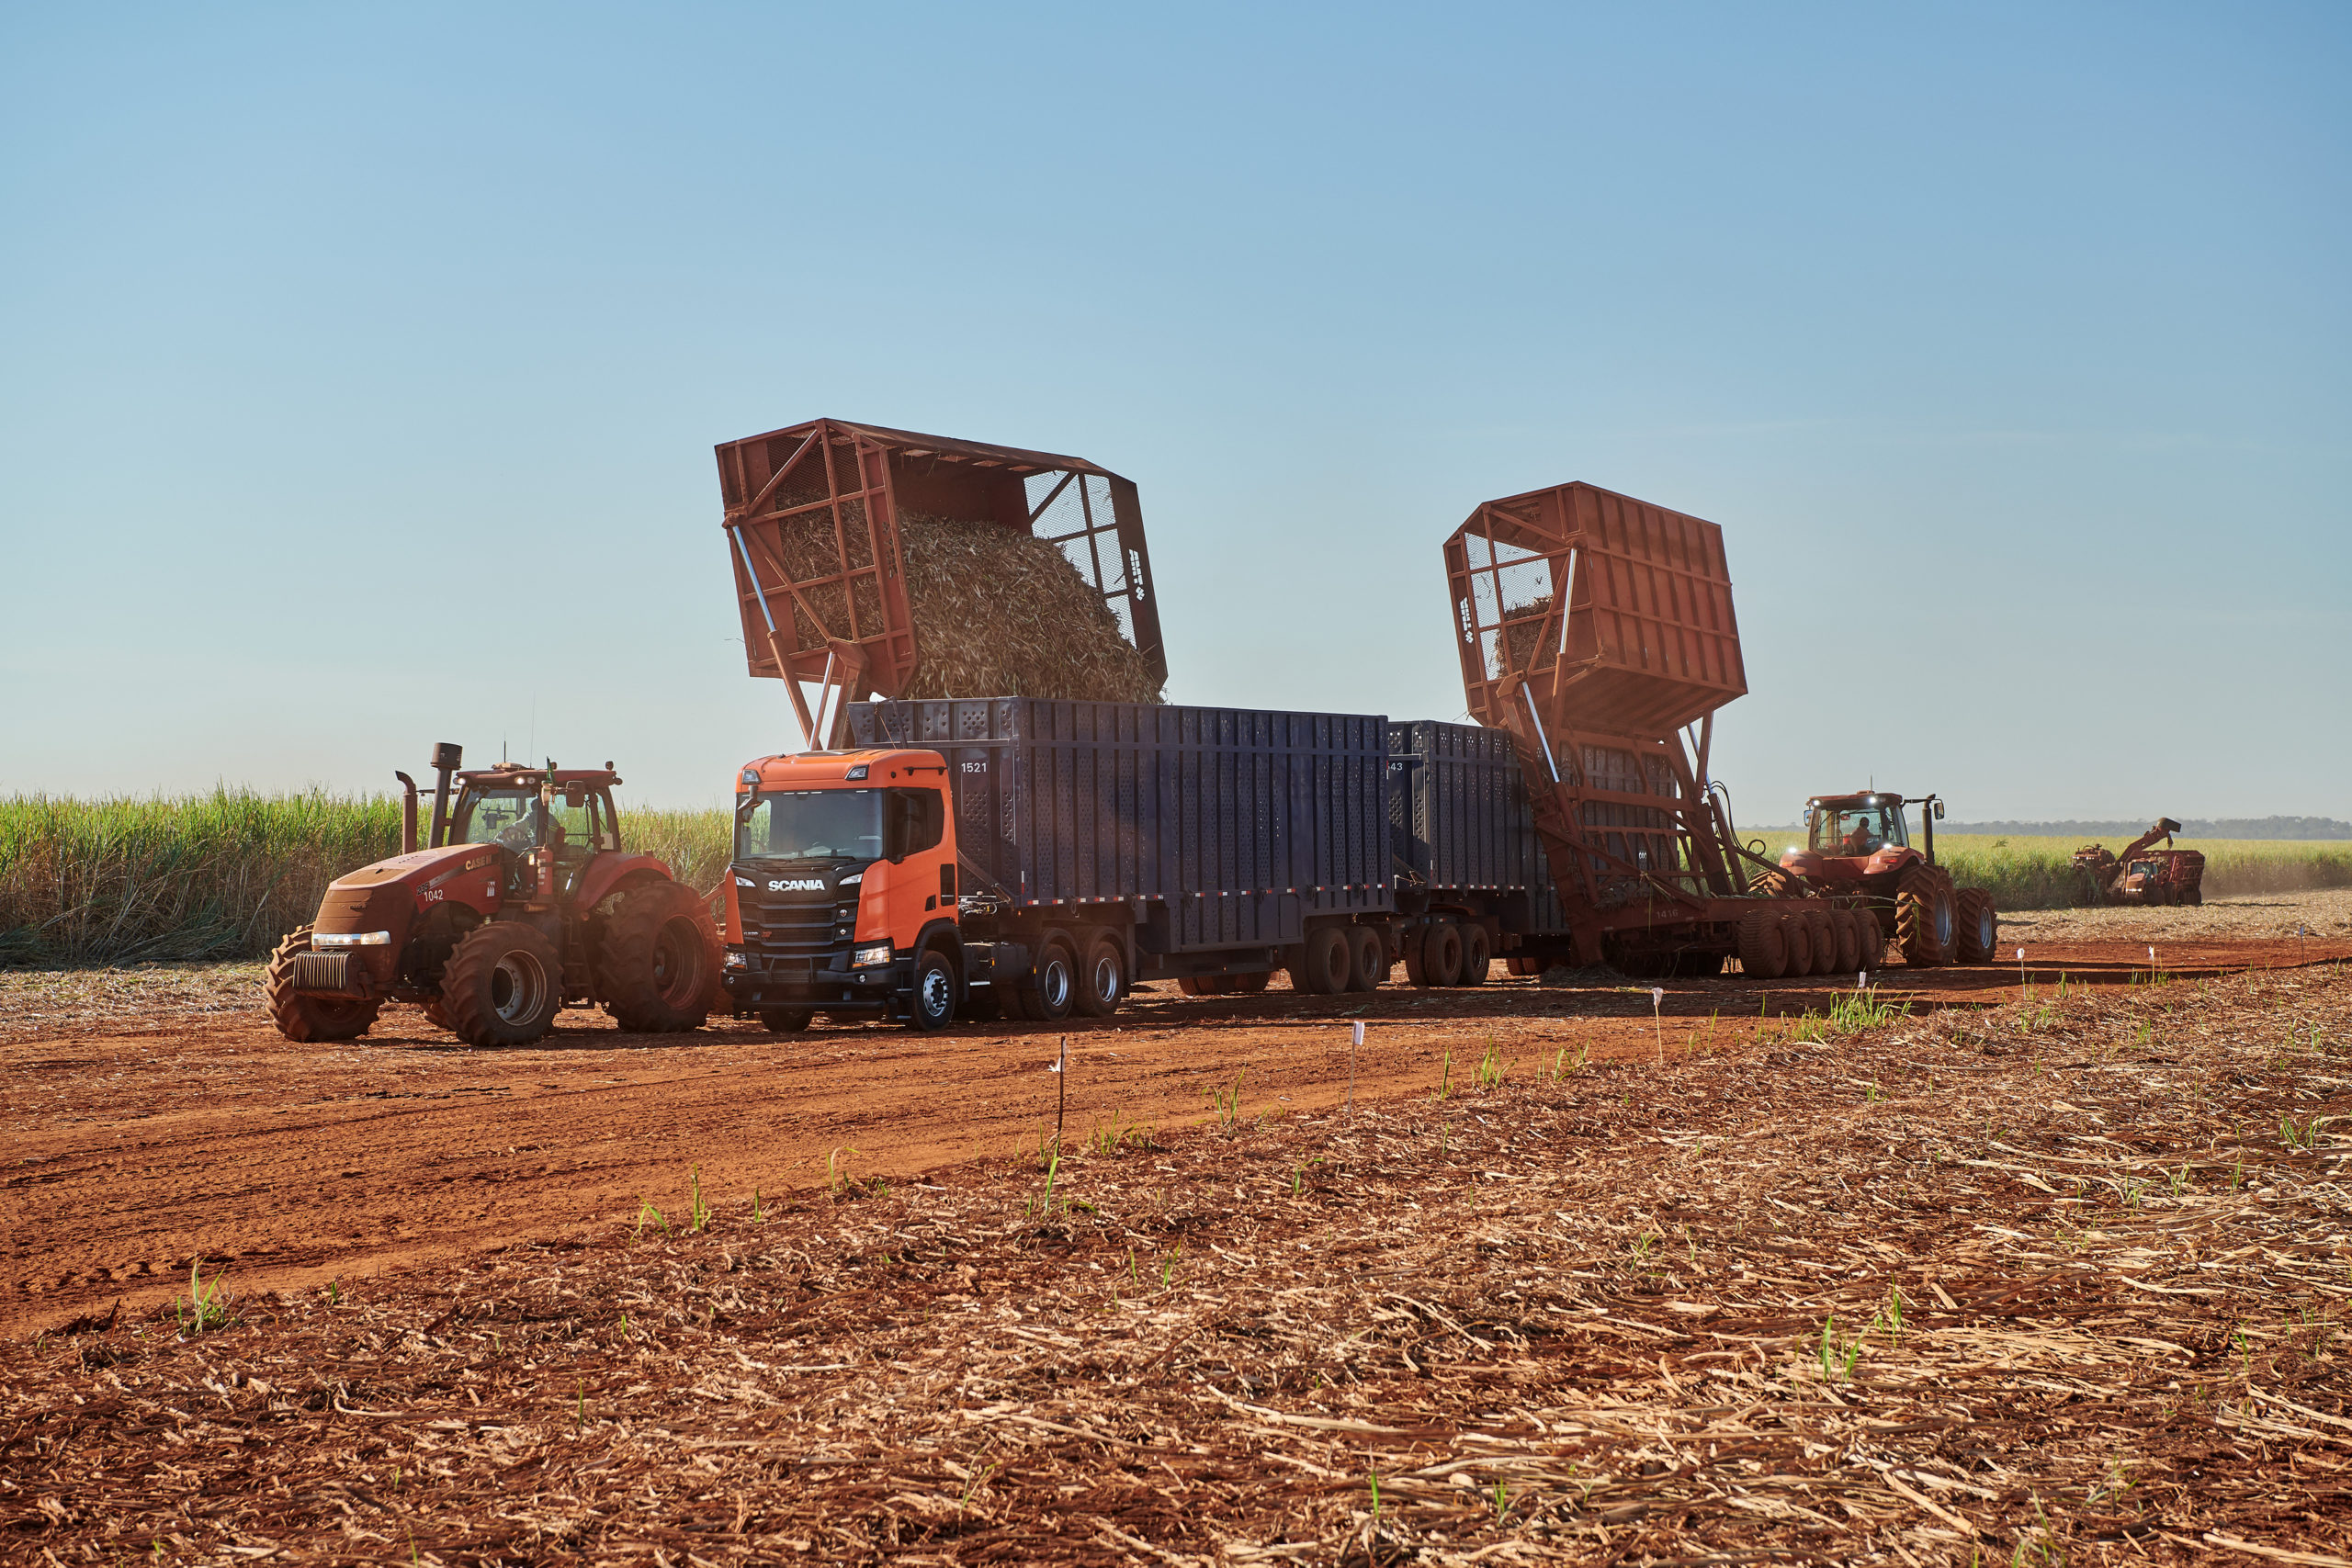 Amaggi avalia usar 100% de biodiesel em frota própria. Na imagem: Caminhão Scania, da série R, durante colheita mecanizada de cana-de-açúcar (Foto: Carlos Biagini/Scania)